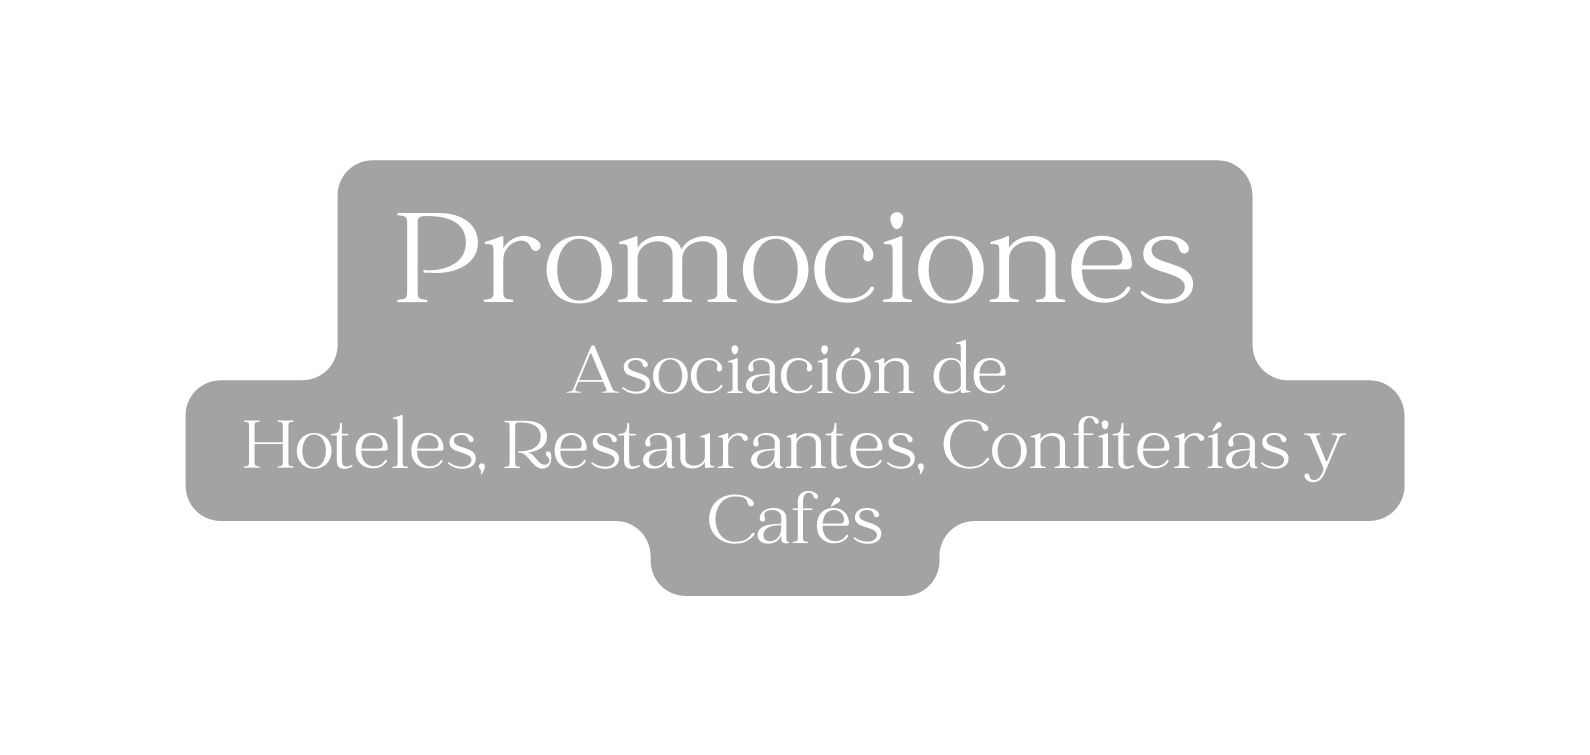 Promociones Asociación de Hoteles Restaurantes Confiterías y Cafés